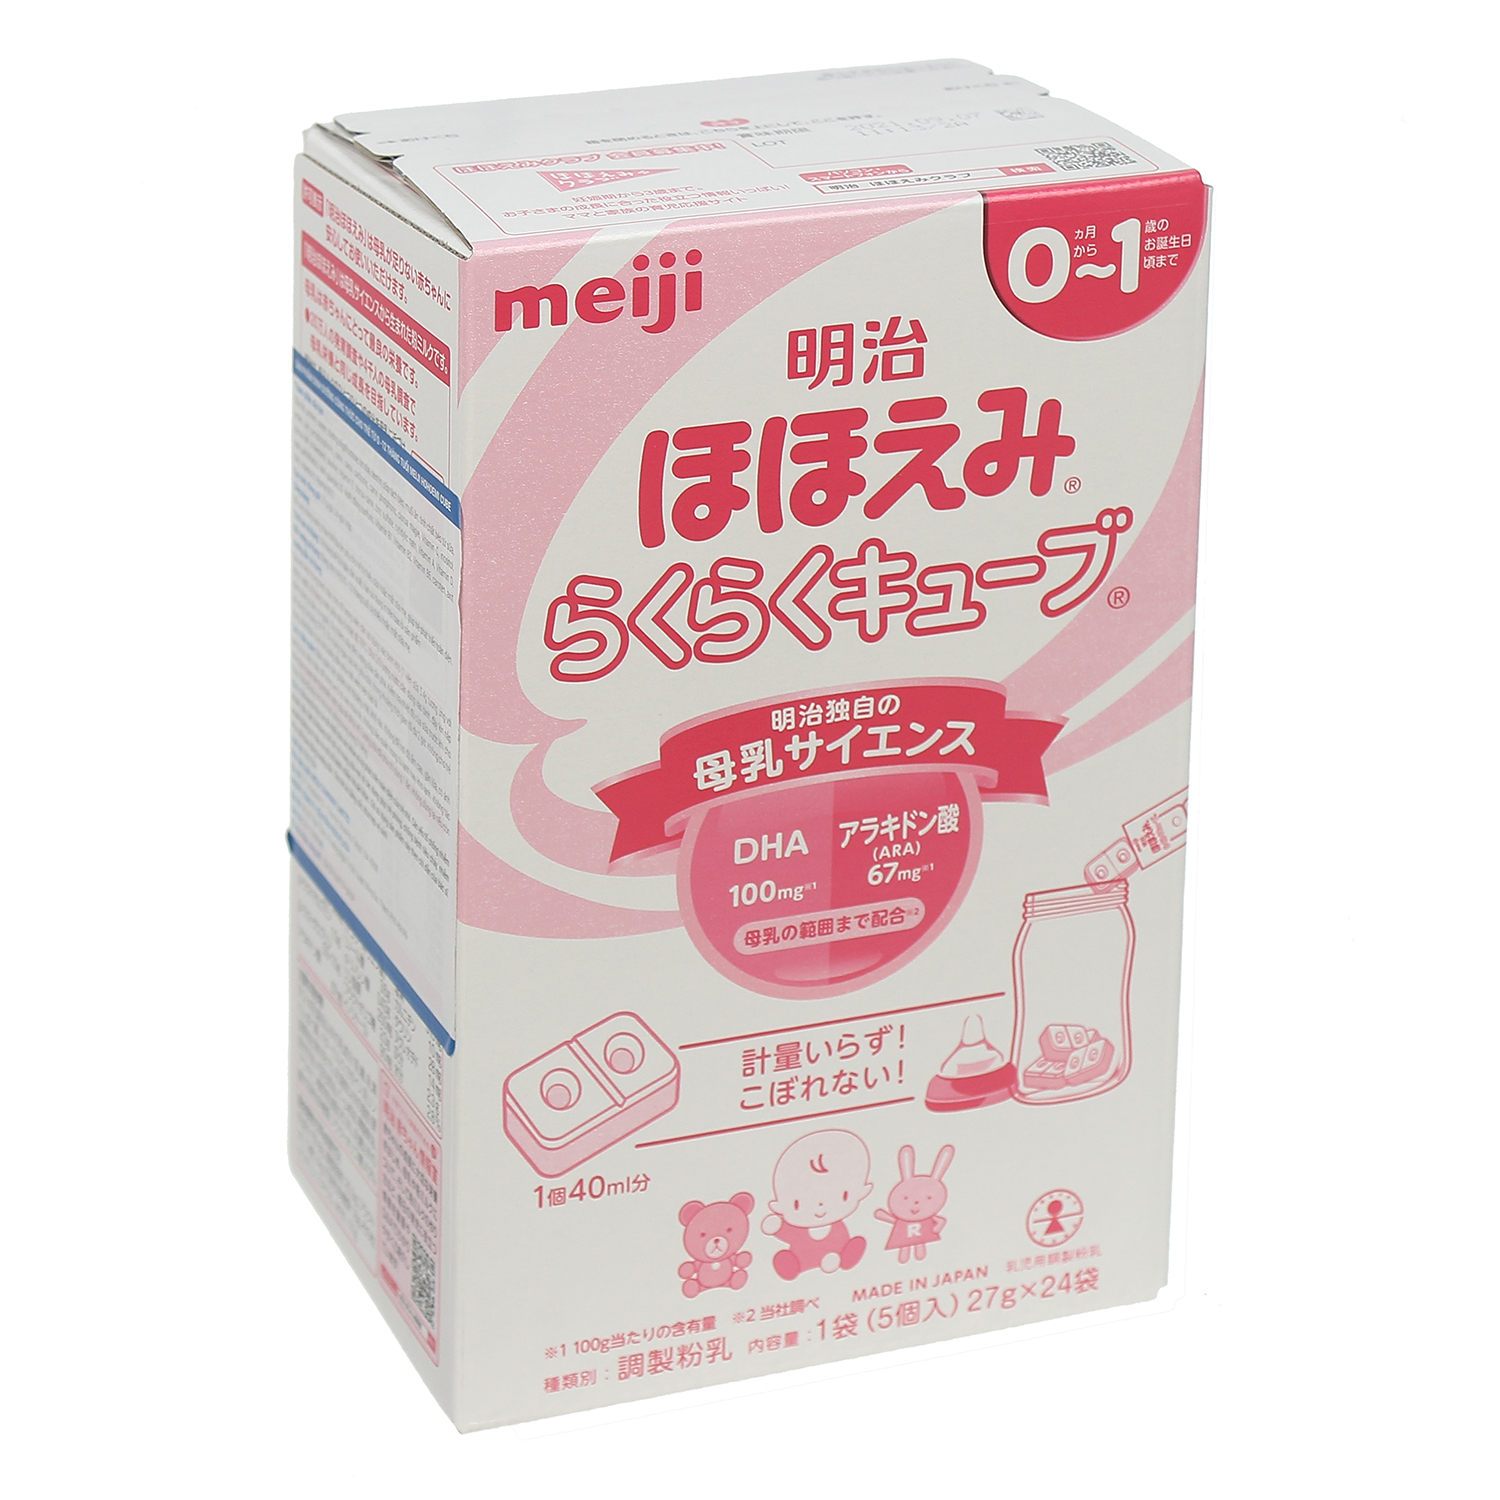 Hộp 24 thanh Sữa bột công thức Meiji Hohoemi Milk cho bé 0 đến 12 tháng tuổi (27g/ thanh) - Nhập khẩu Nhật Bản